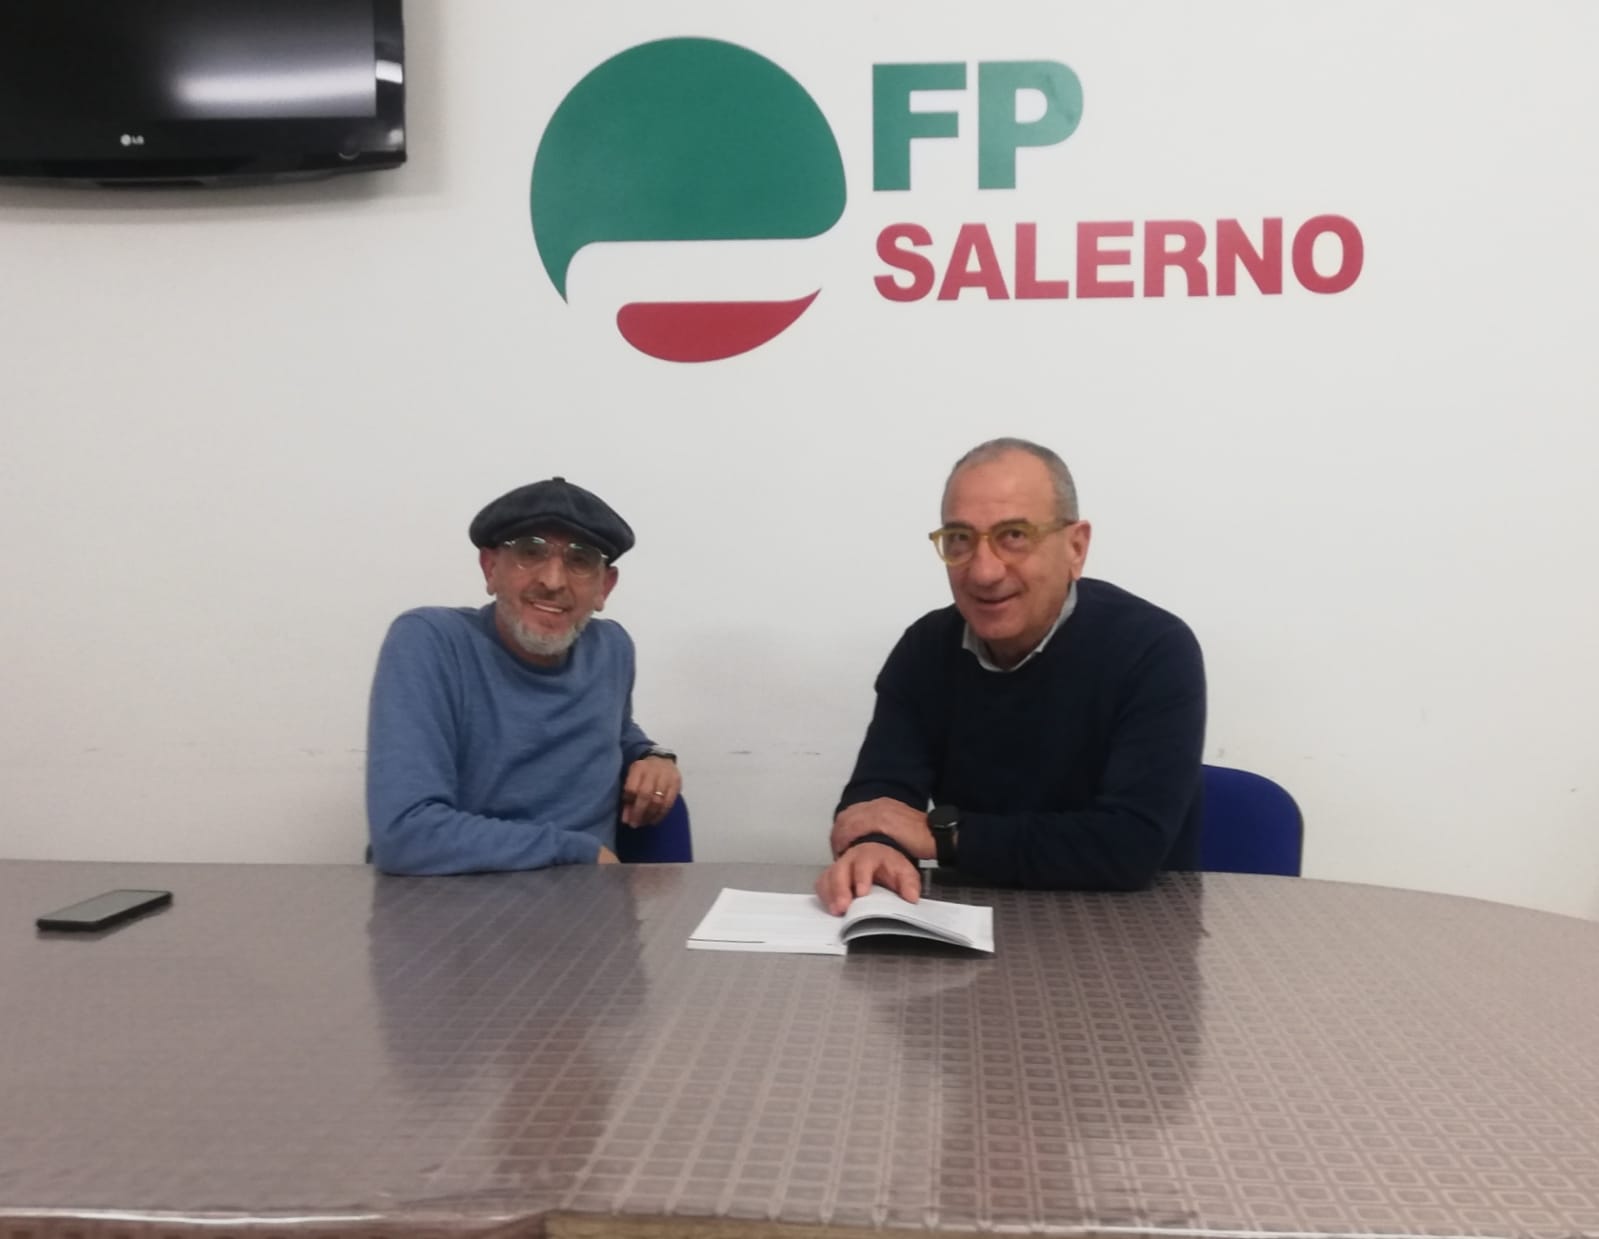 Salerno: Cisl FP, AOU, continua stabilizzazione precari